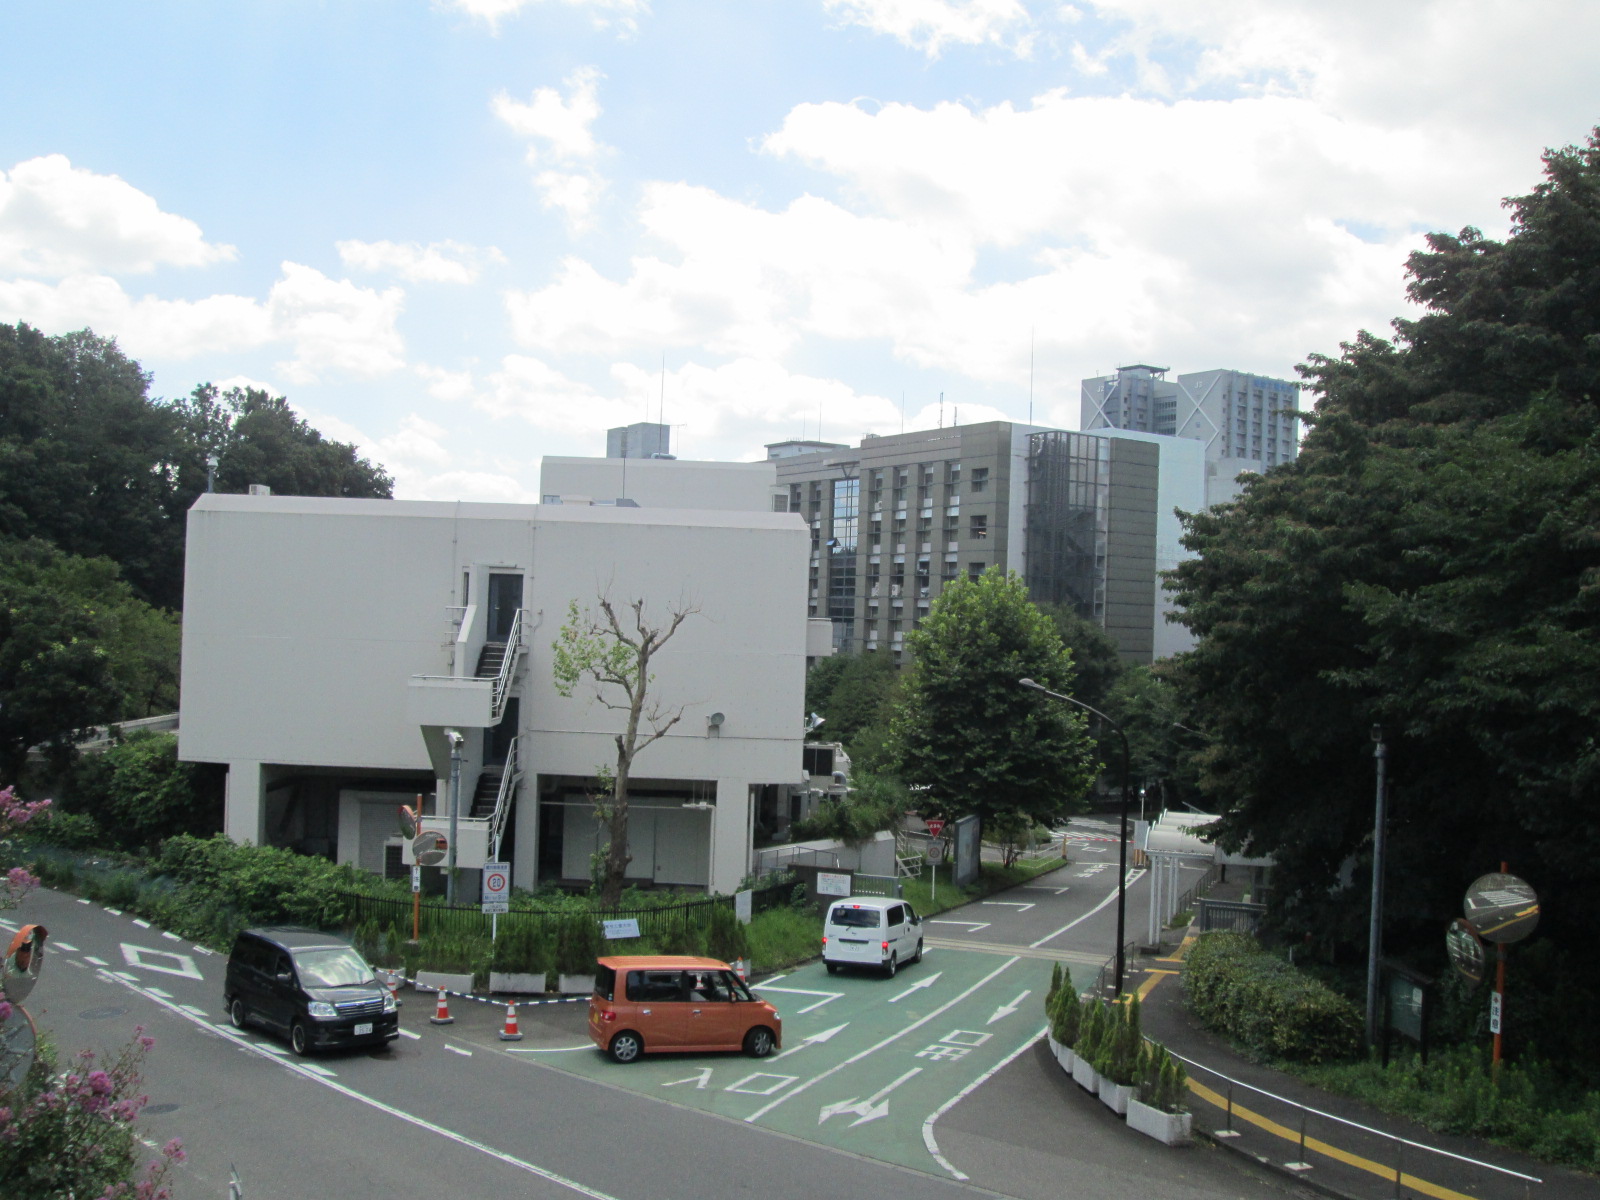 University ・ Junior college. Tokyo Institute of Technology (University of ・ 720m up to junior college)